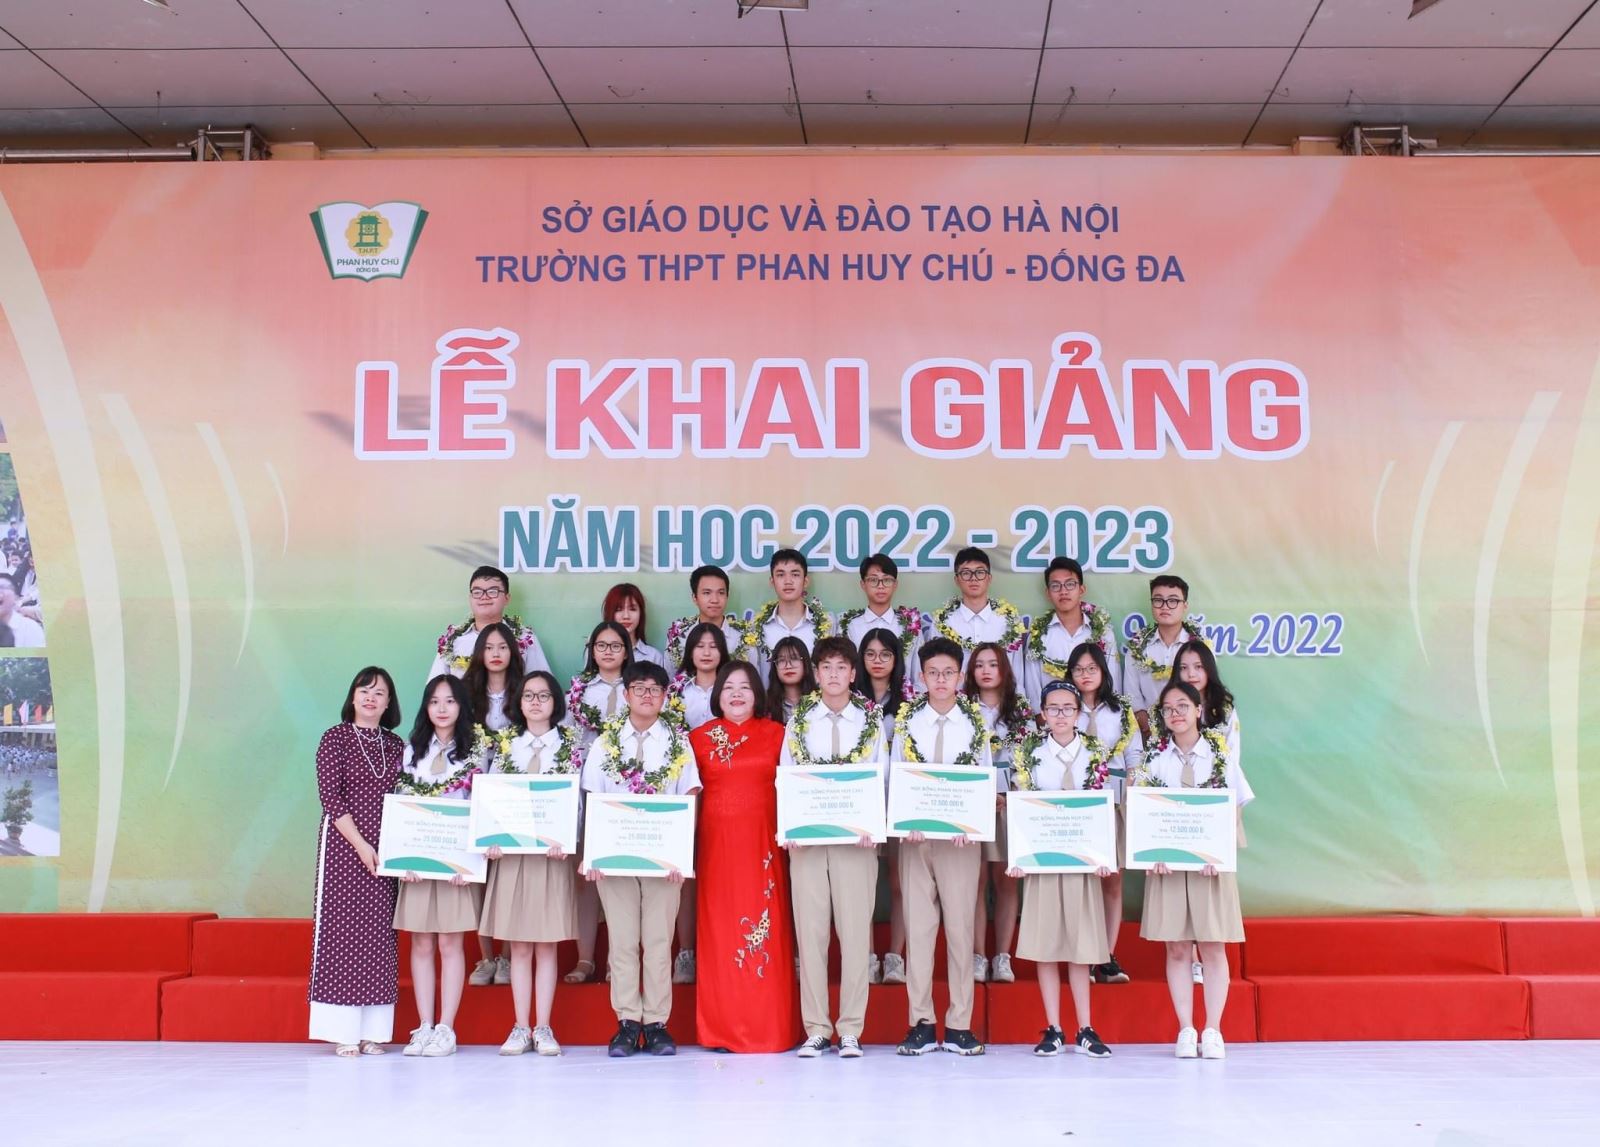 Trường THPT Phan Huy Chú, Đống Đa, Hà Nội vinh danh học sinh khối 10/K26 đạt học bổng Phan Huy Chú